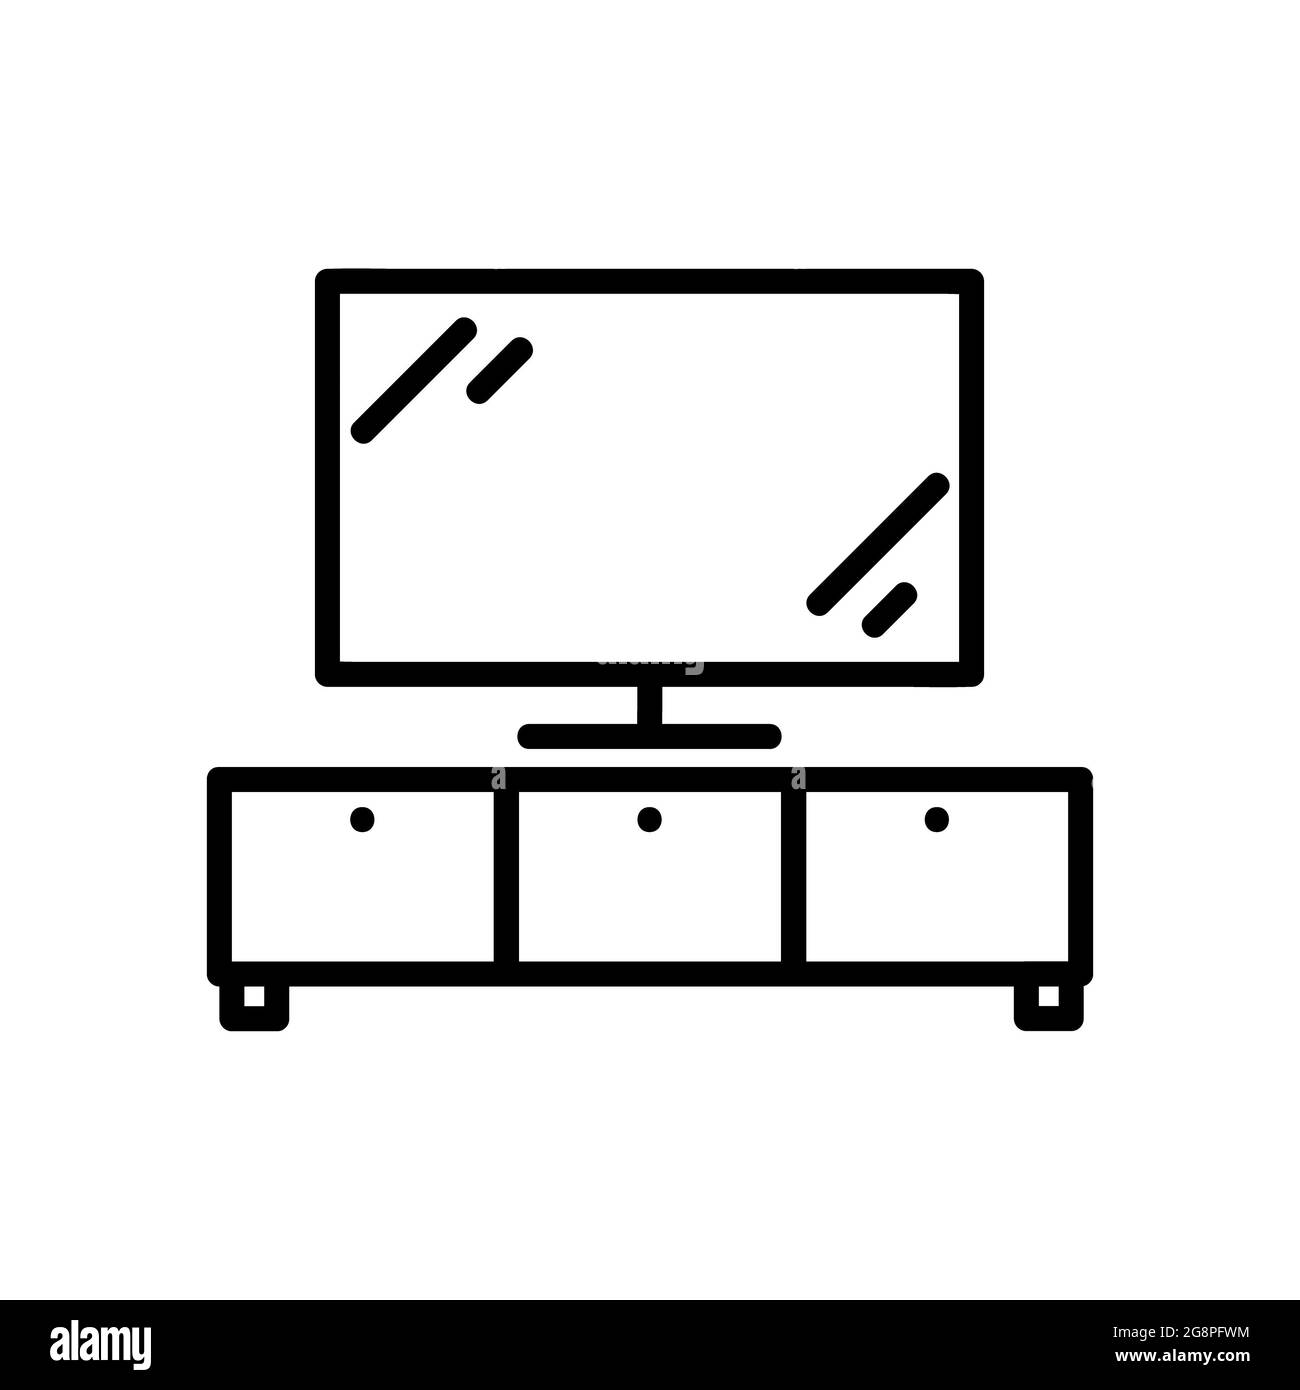 Meuble tv icone Banque d'images noir et blanc - Alamy